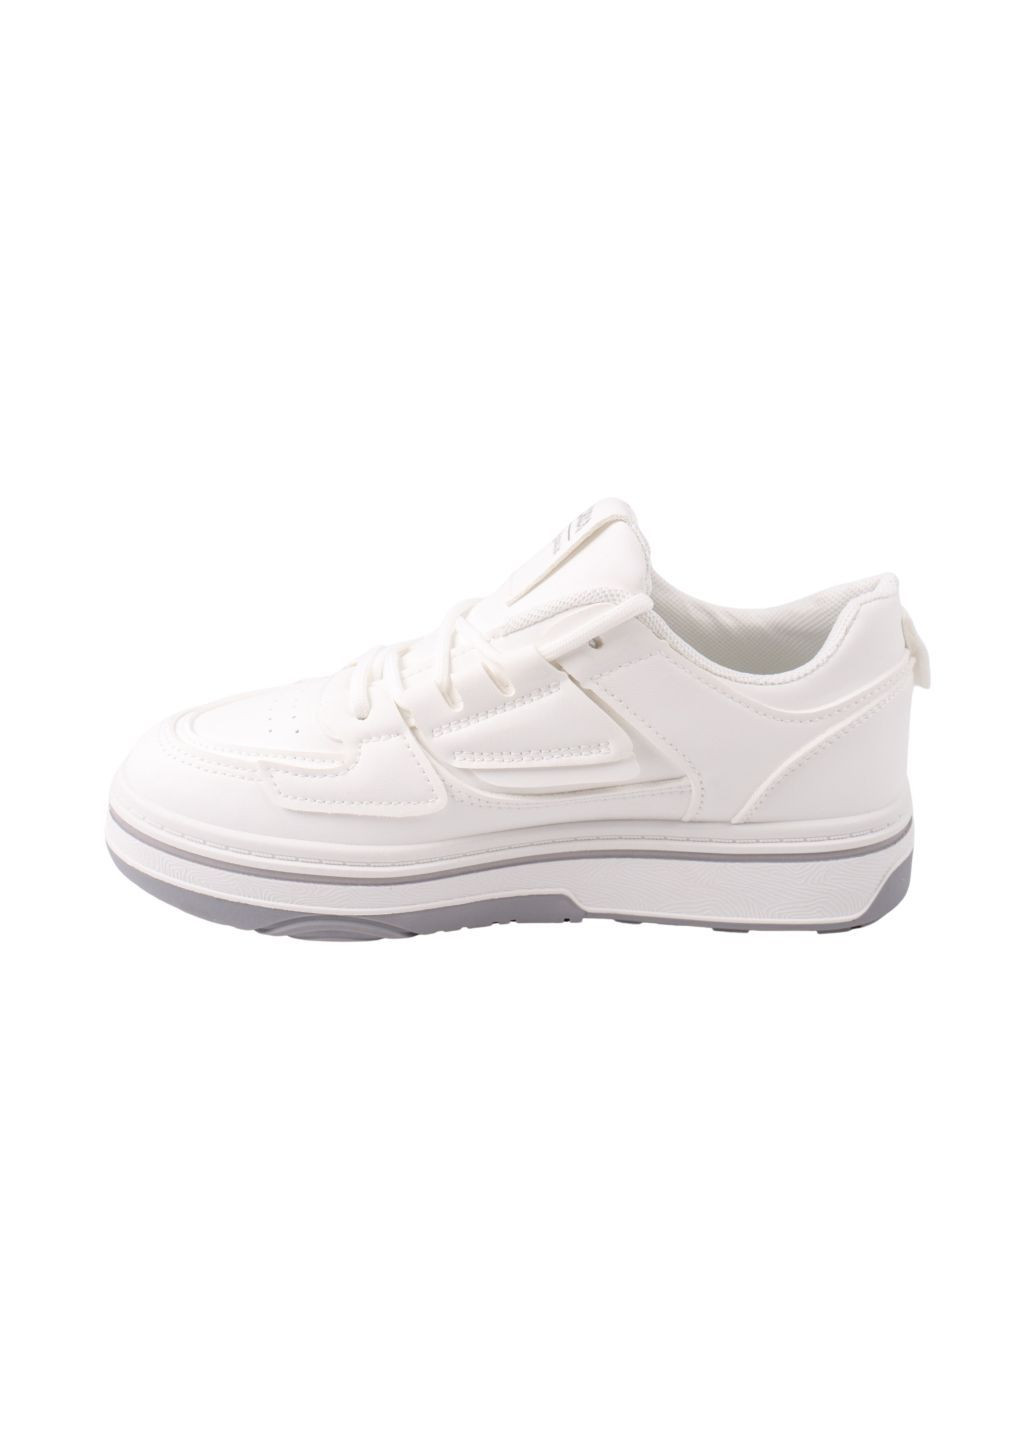 Білі кросівки жіночі білі Fashion 121-24DTS